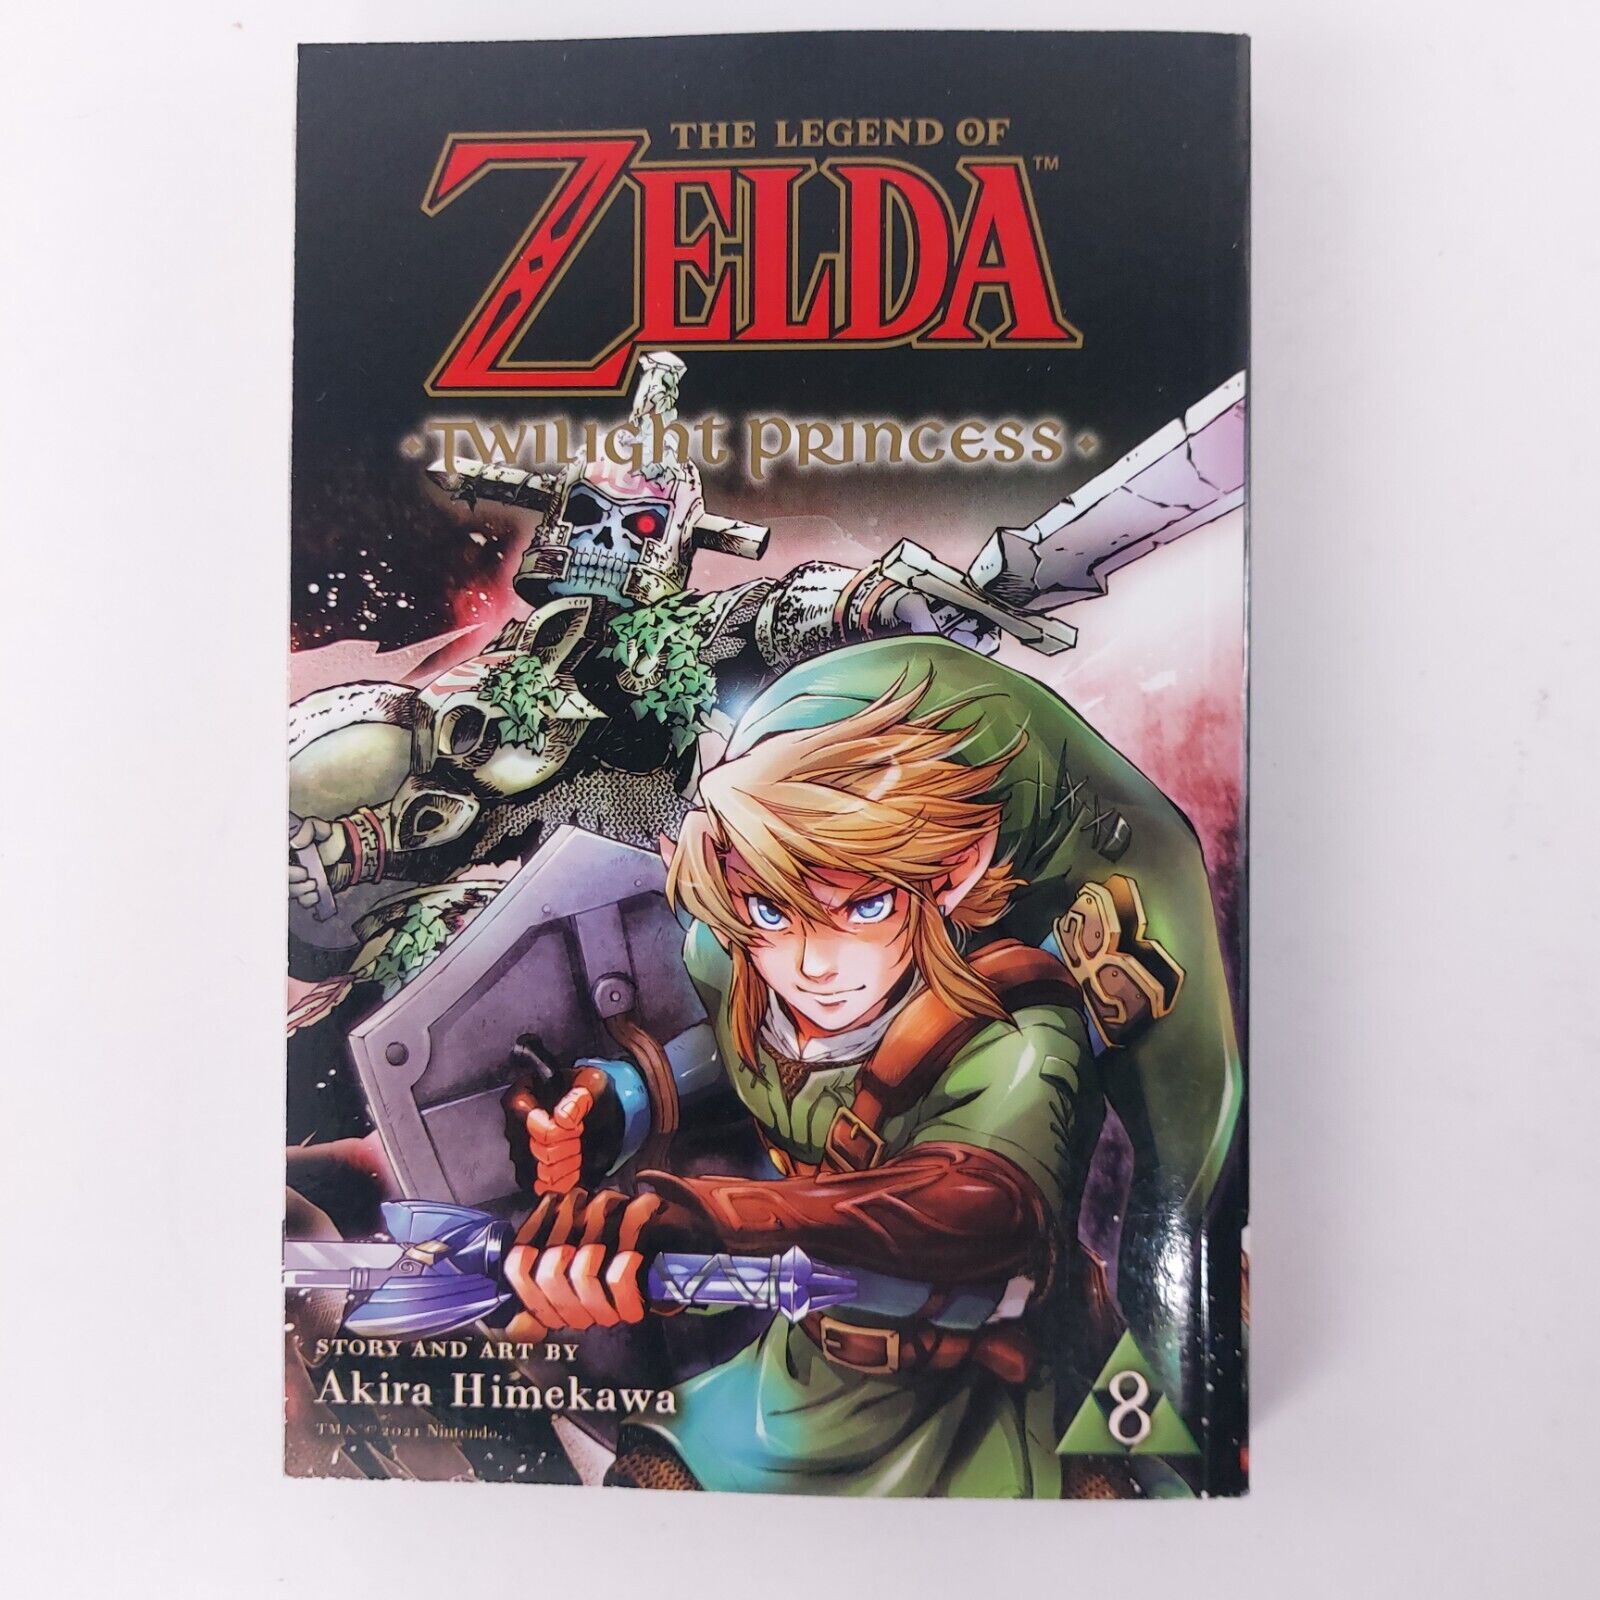 The Legend of Zelda: Twilight Princess, Vol. 8 Manga by Akira Himekawa